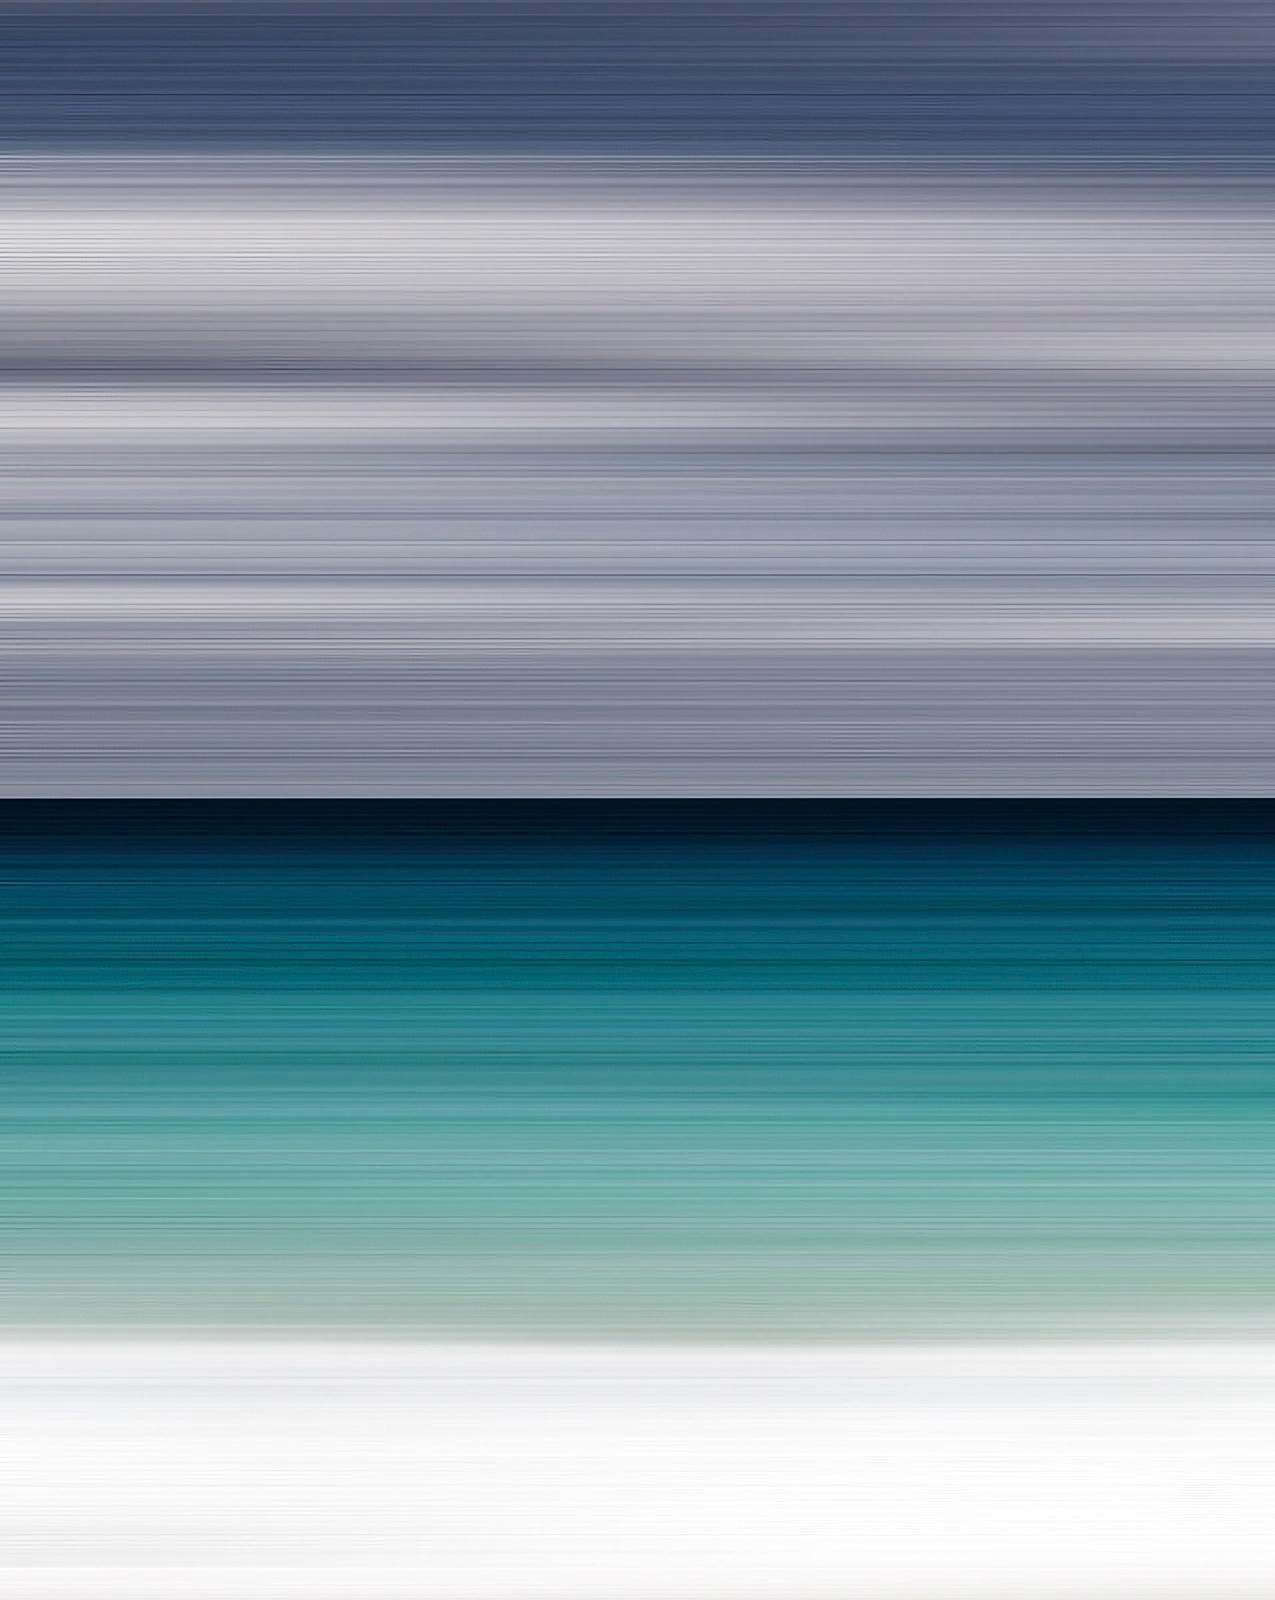 In diesem einzigartigen Fotodruck hat Etienne Labbé die subtilen Variationen eines stimmungsvollen grauen Himmels über einem Band aus smaragdgrünem Wasser eingefangen. Seine wunderschönen Kompositionen experimentieren mit der Interaktion zwischen